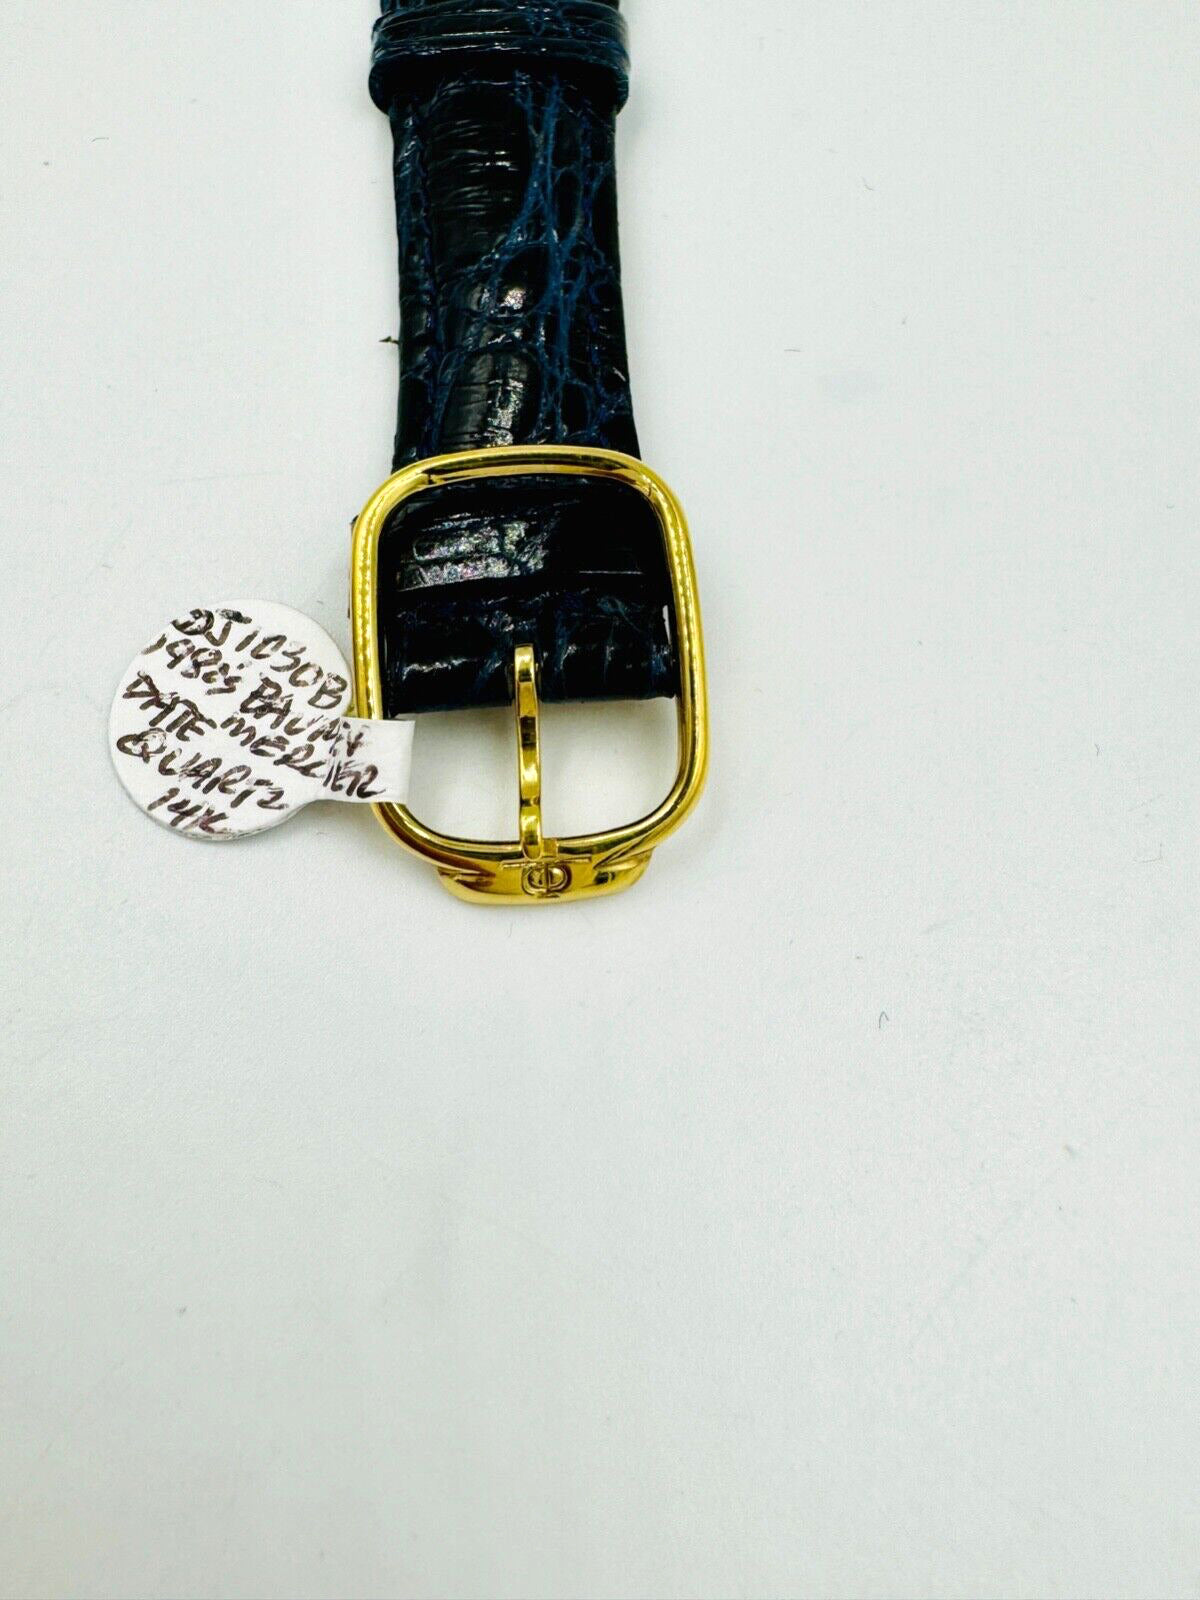 Vintage Baume Mercier Classima  Quartz Men's Watch 14K Yellow Gold